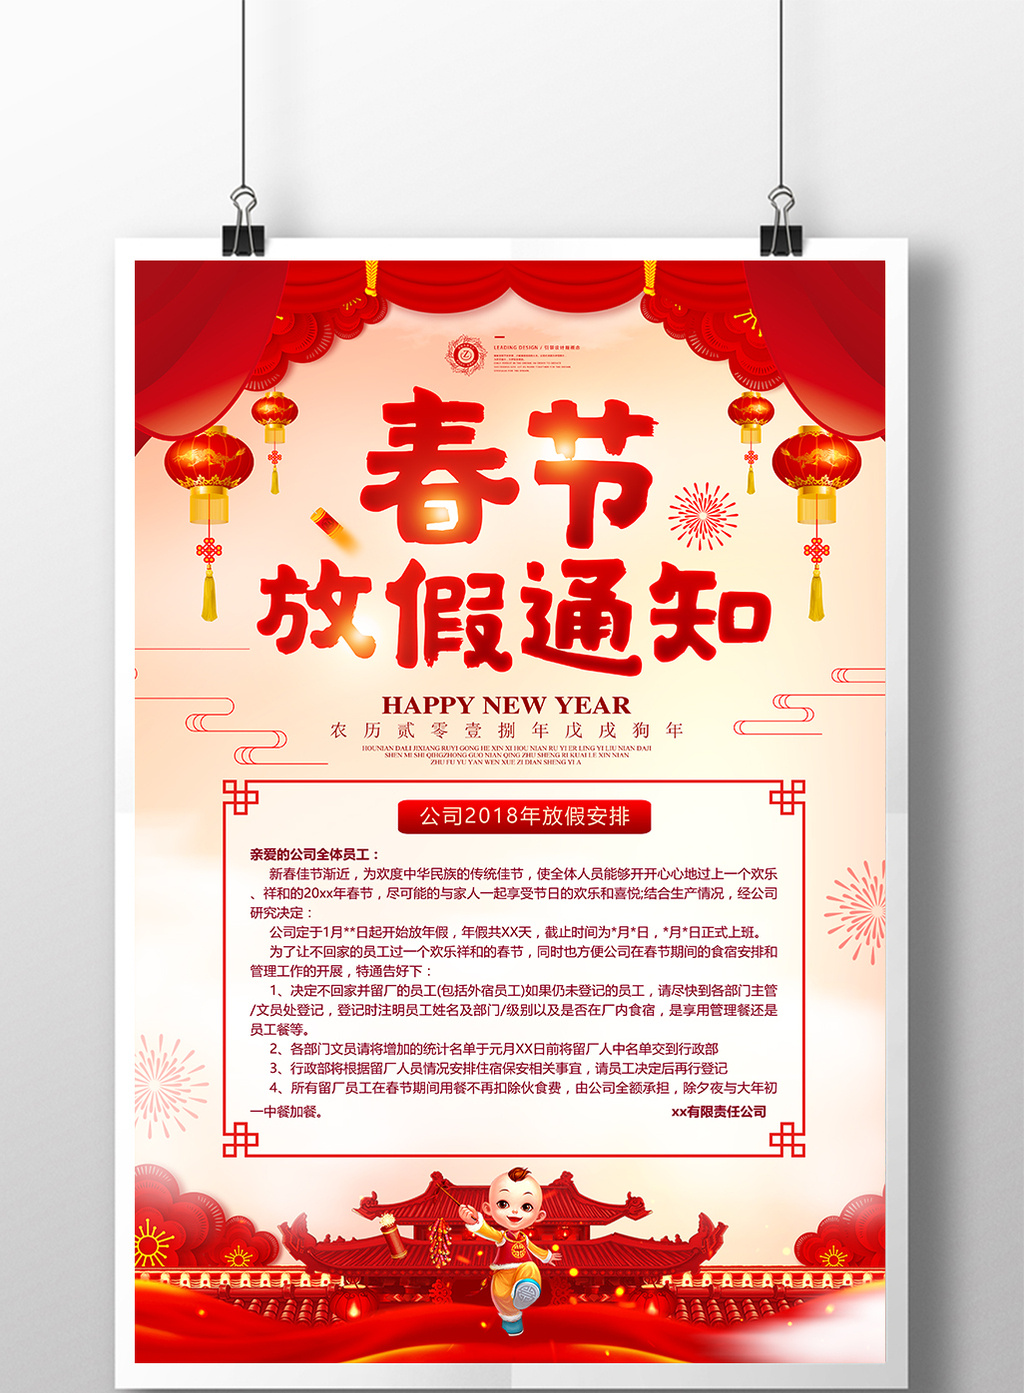 中国风春节放假通知2018温馨提示海报模板免